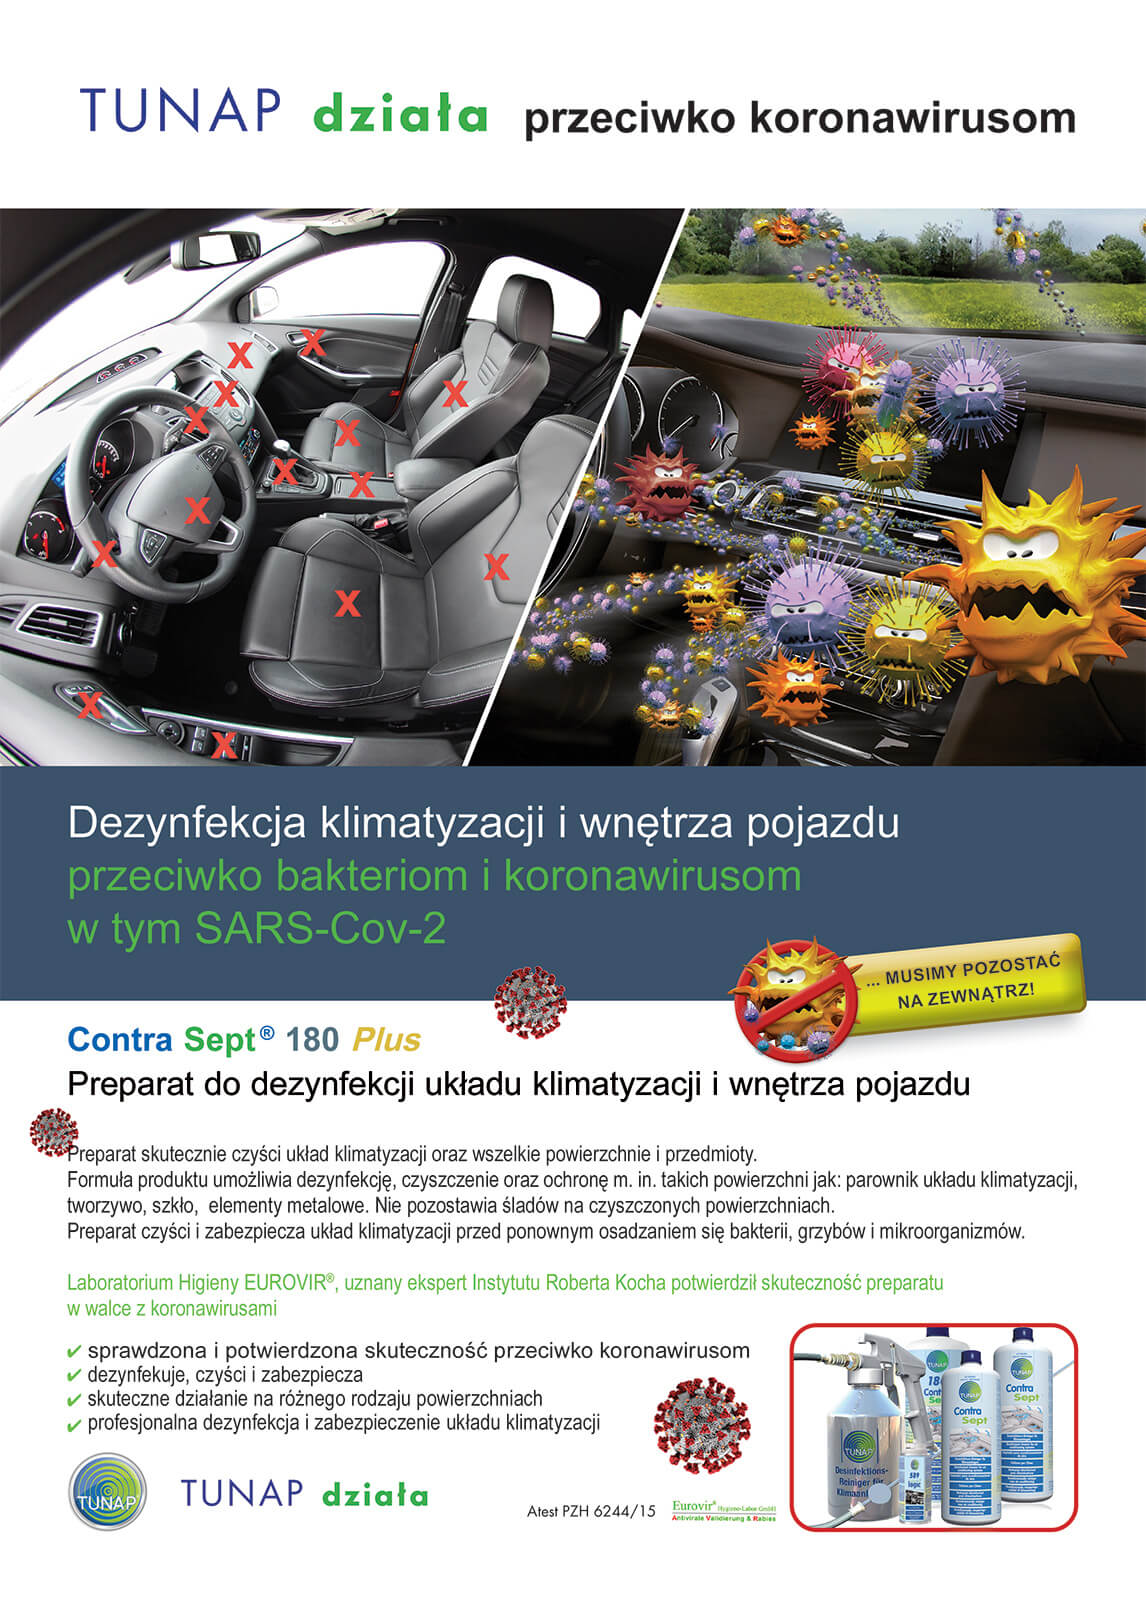 Auto Serwis Wiktorowicz - Dezynfekcja pojazdów